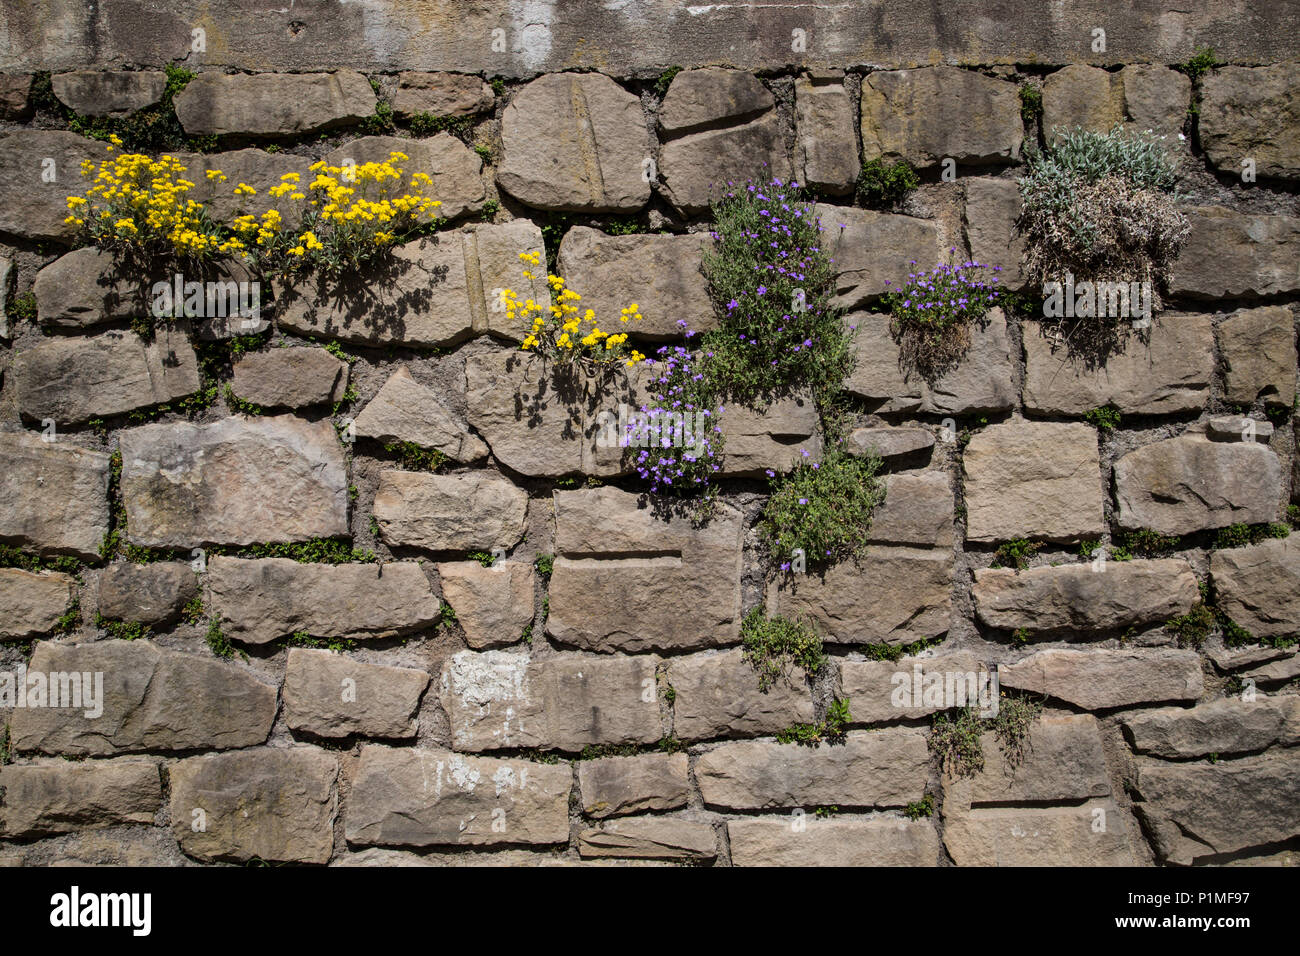 Naturaleza encontrando su camino con florecientes plantas prósperas creciente en el viejo muro de piedra seca Foto de stock